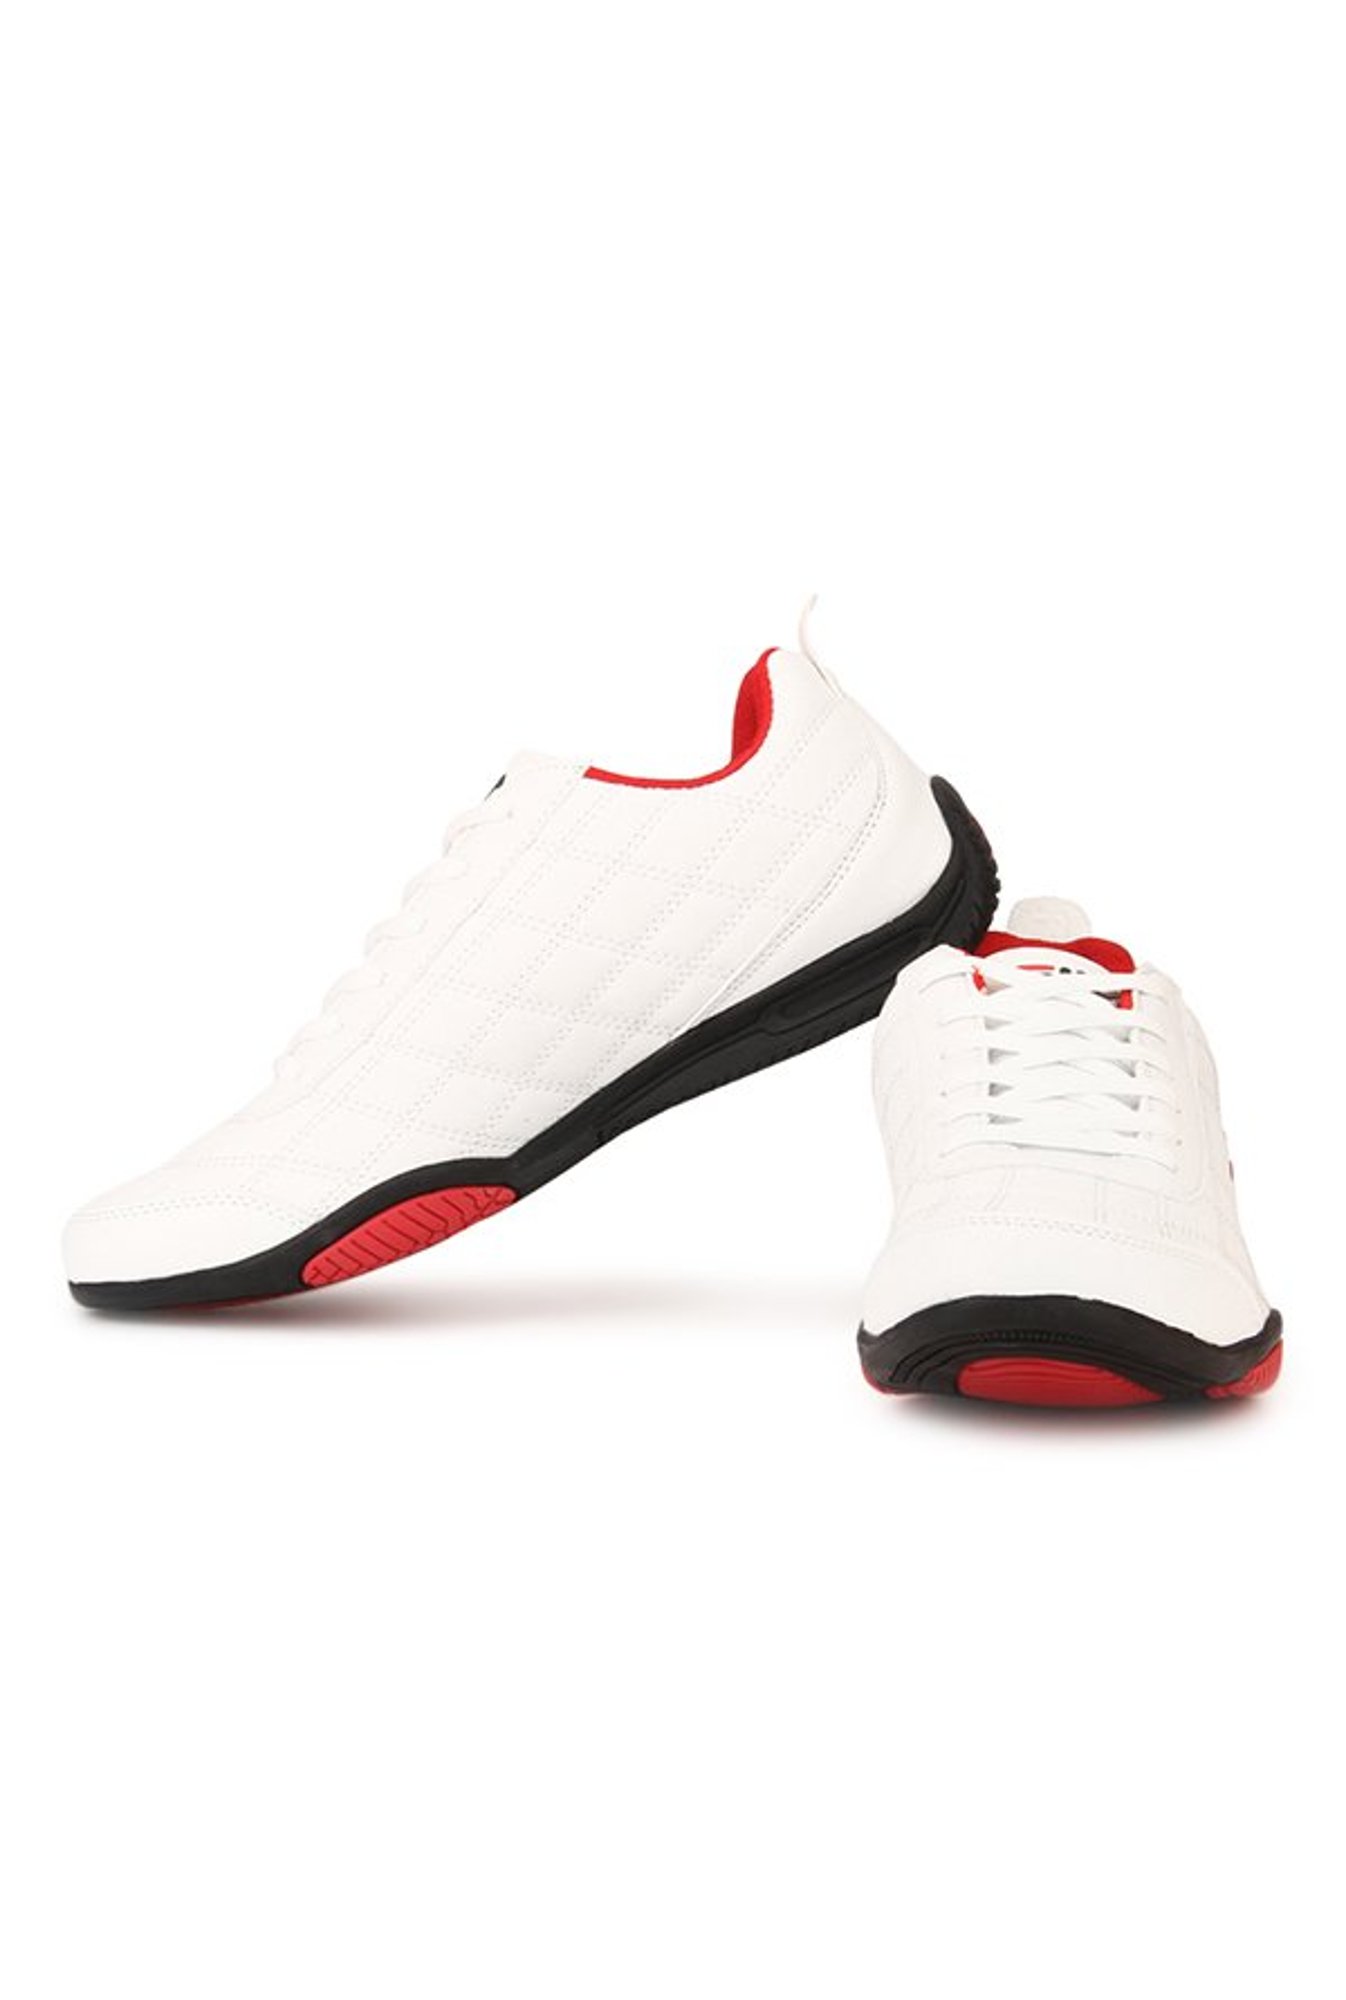 Fila Men's Easton White/Navy Sneakers - 6 UK/India (40 EU) : Amazon.in:  Fashion